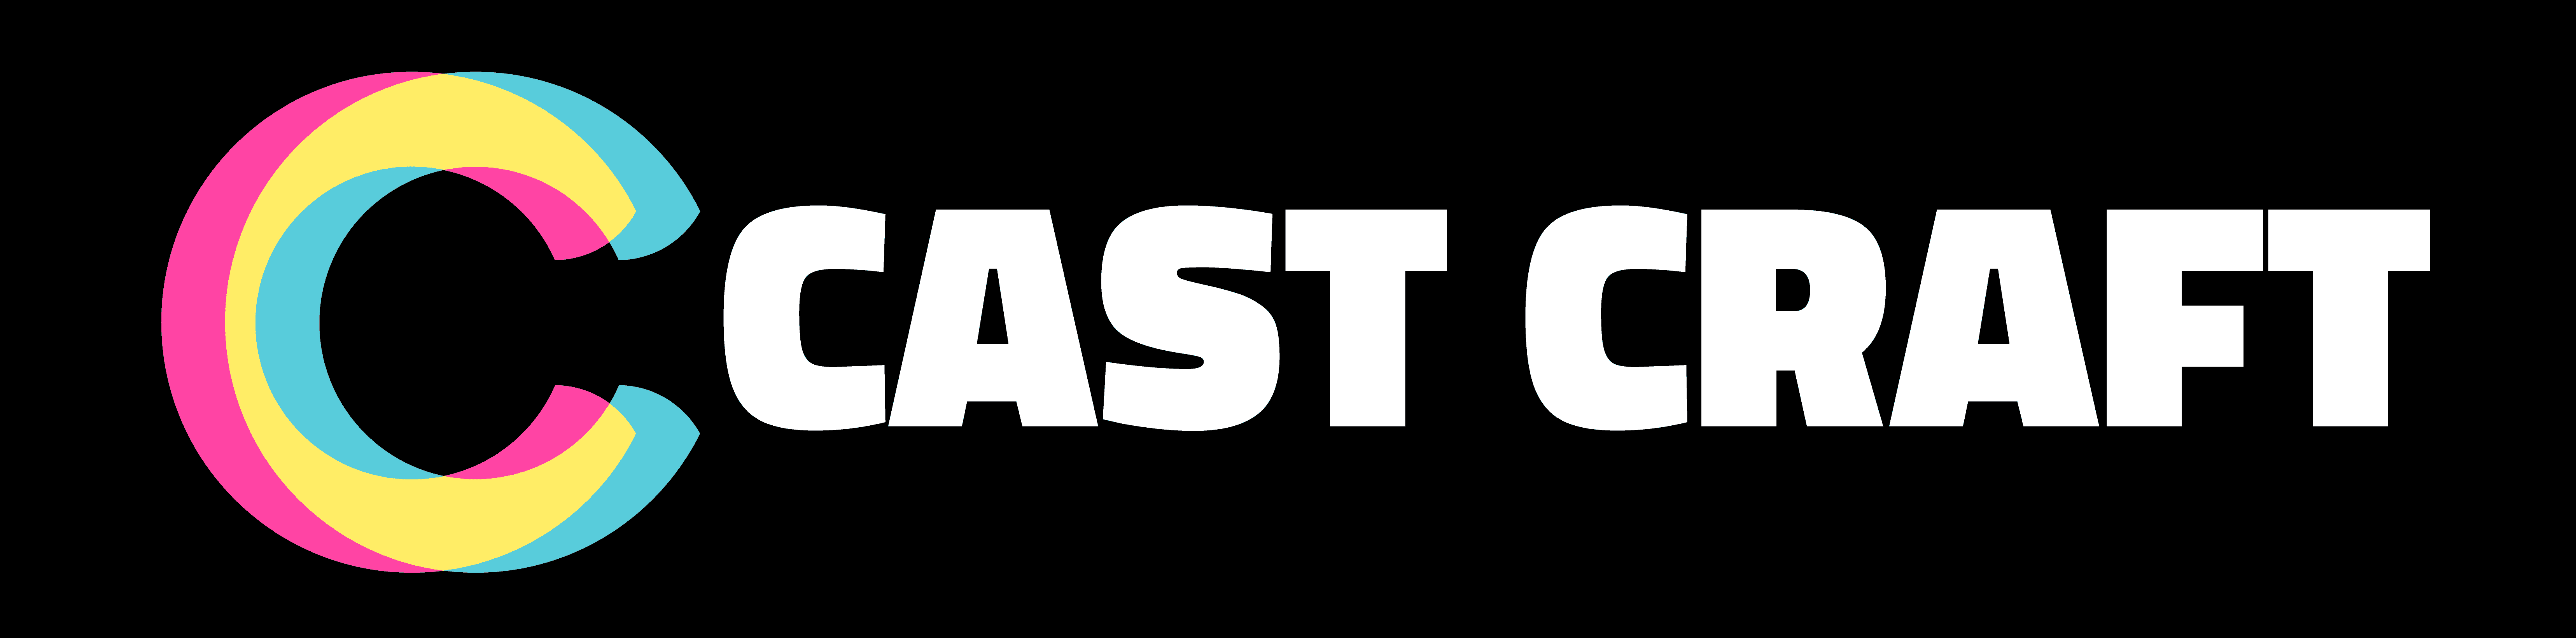 castcraft logo black